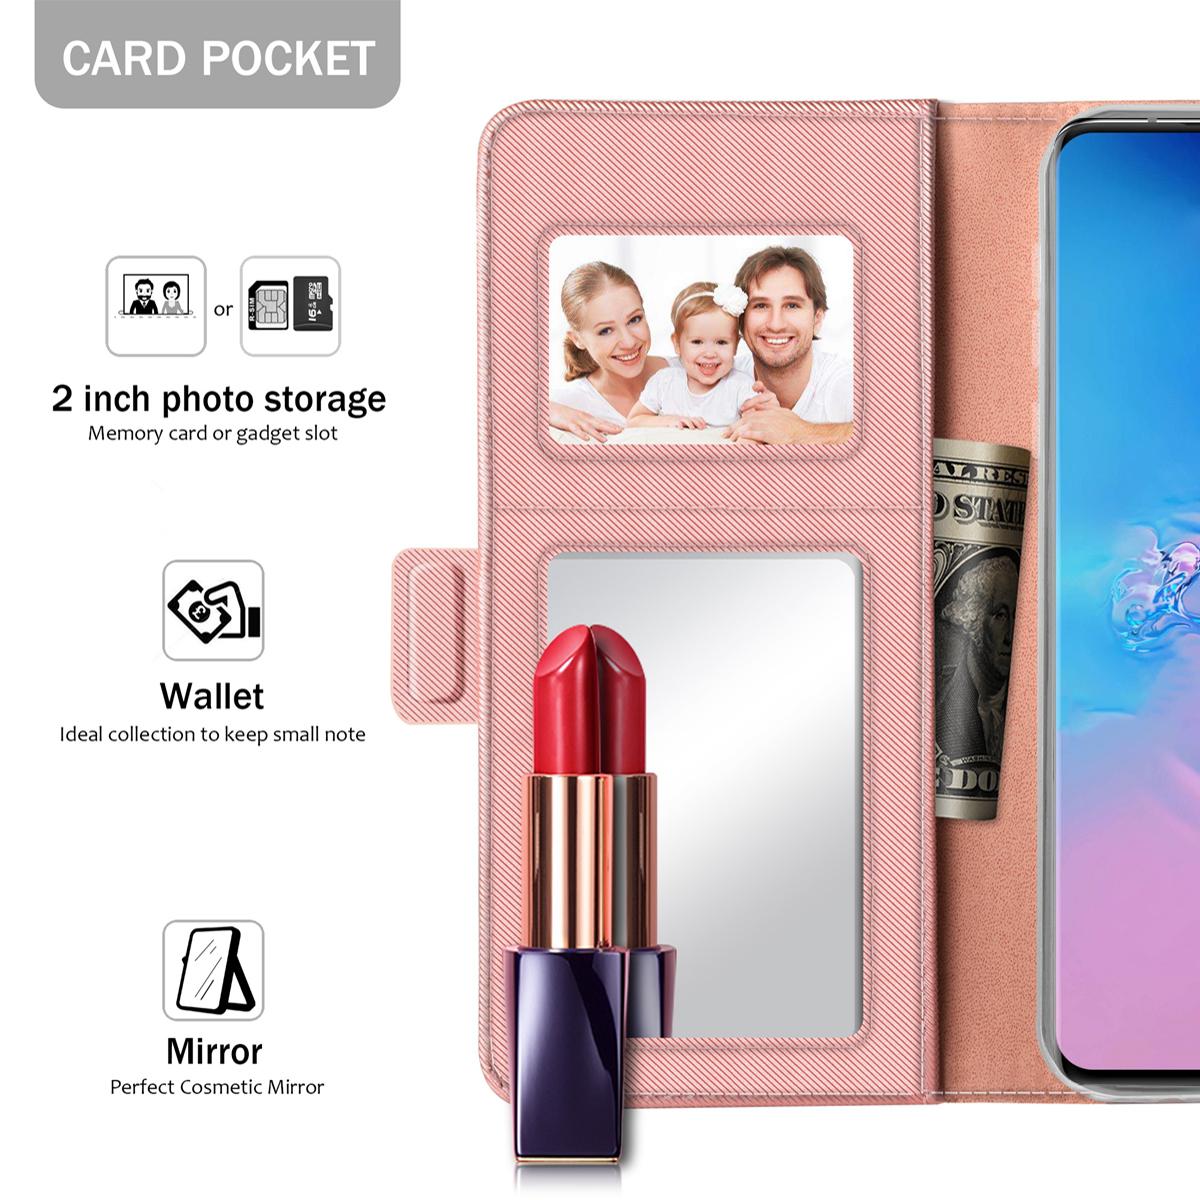 Samsung Galaxy S20 Ultra Portemonnaie-Hülle Spiegel Rosa